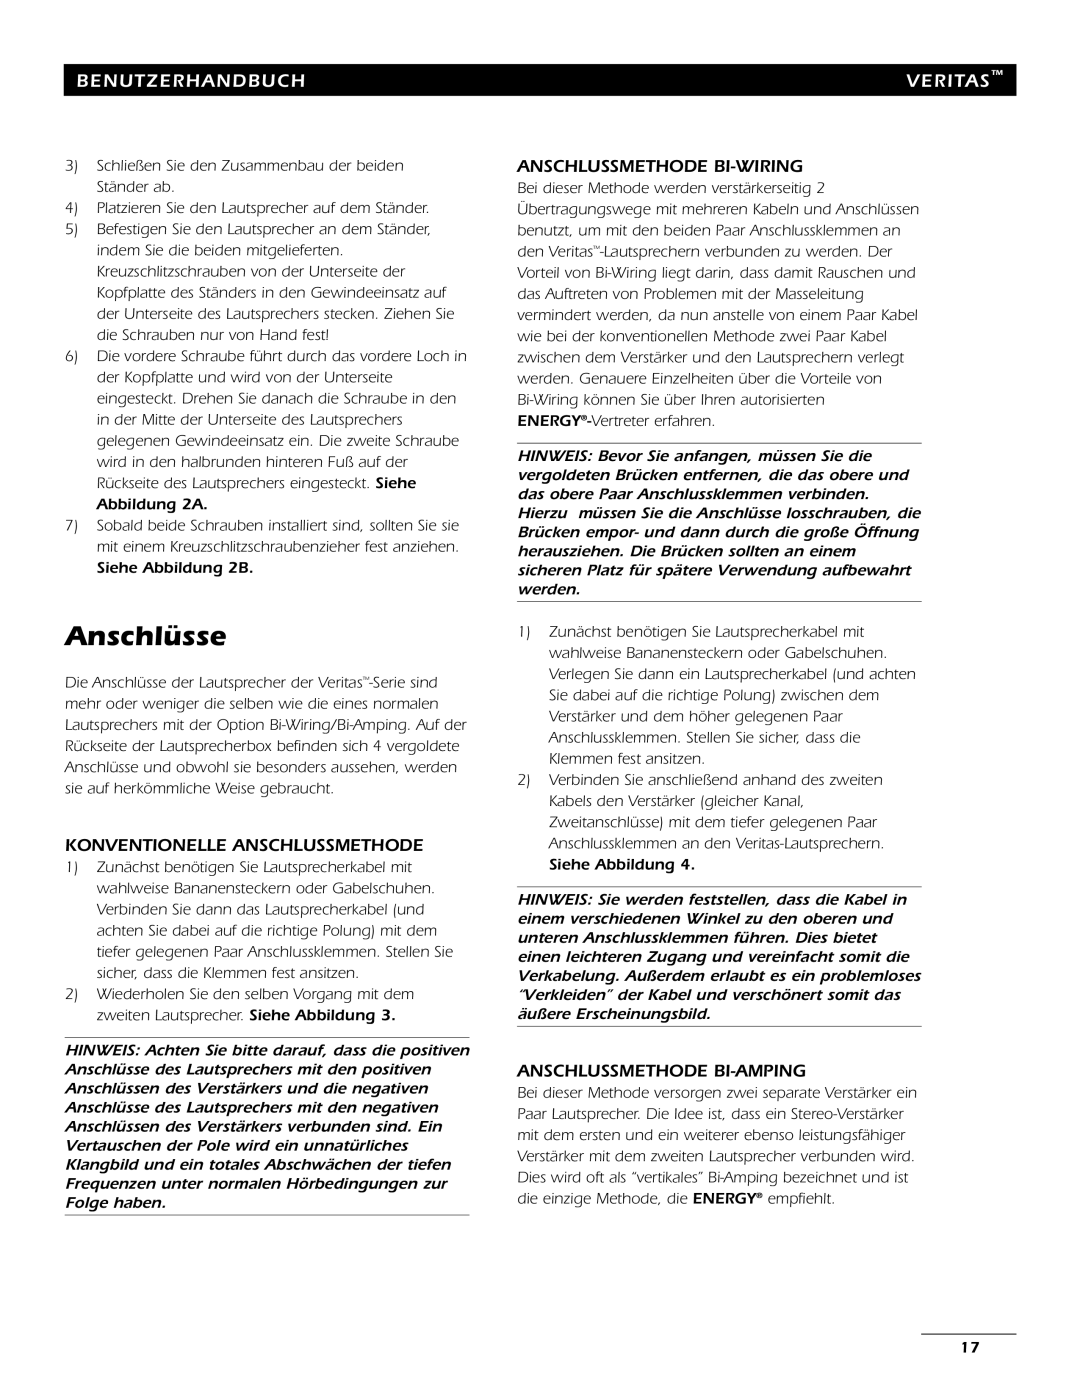 Energy Speaker Systems 7AI manual Anschlüsse, Konventionelle Anschlussmethode, Anschlussmethode Bi-Wiring, Benutzerhandbuch 